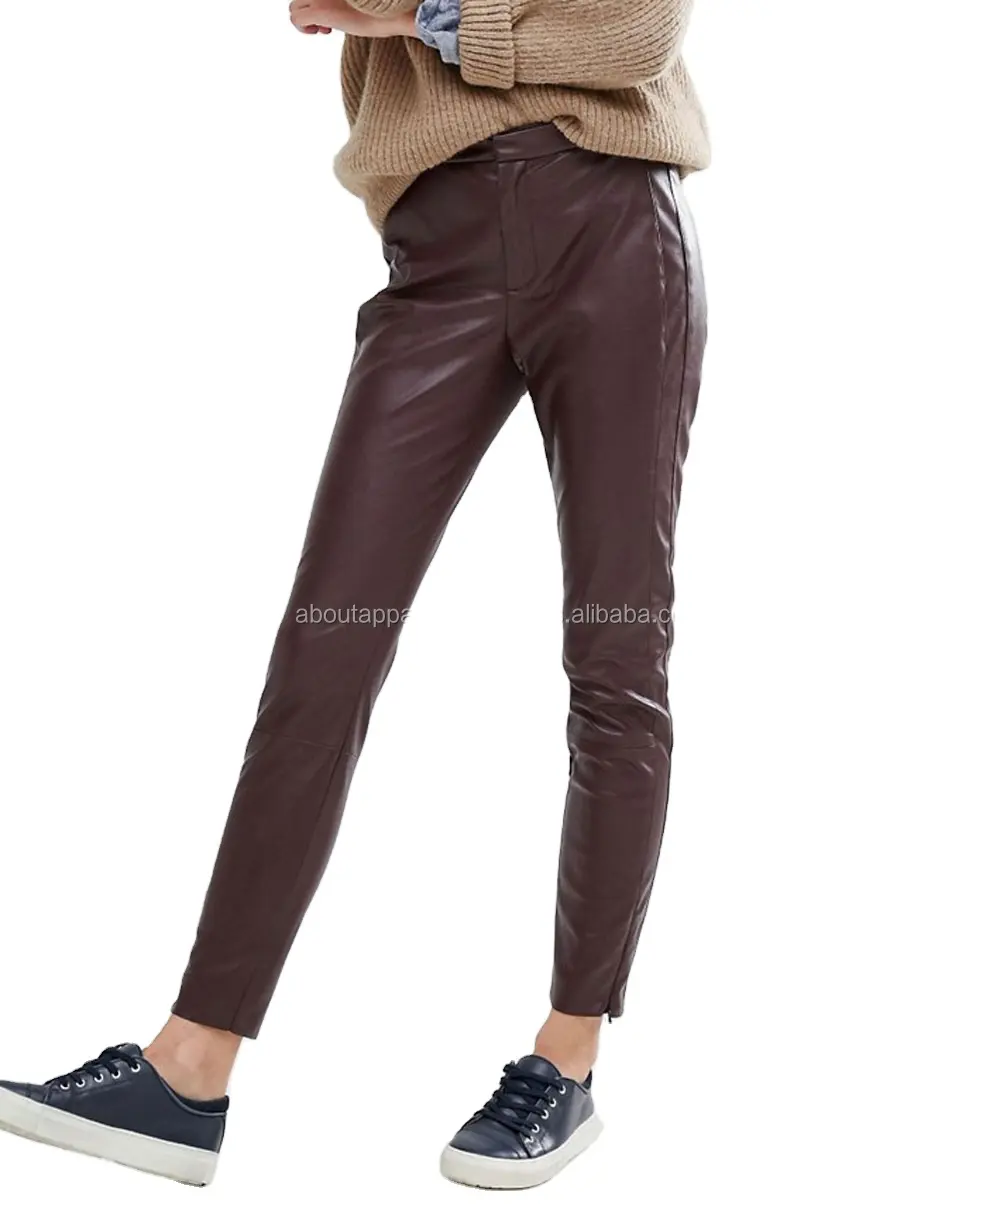 Calça de couro, nova calça de couro preta barata para mulheres